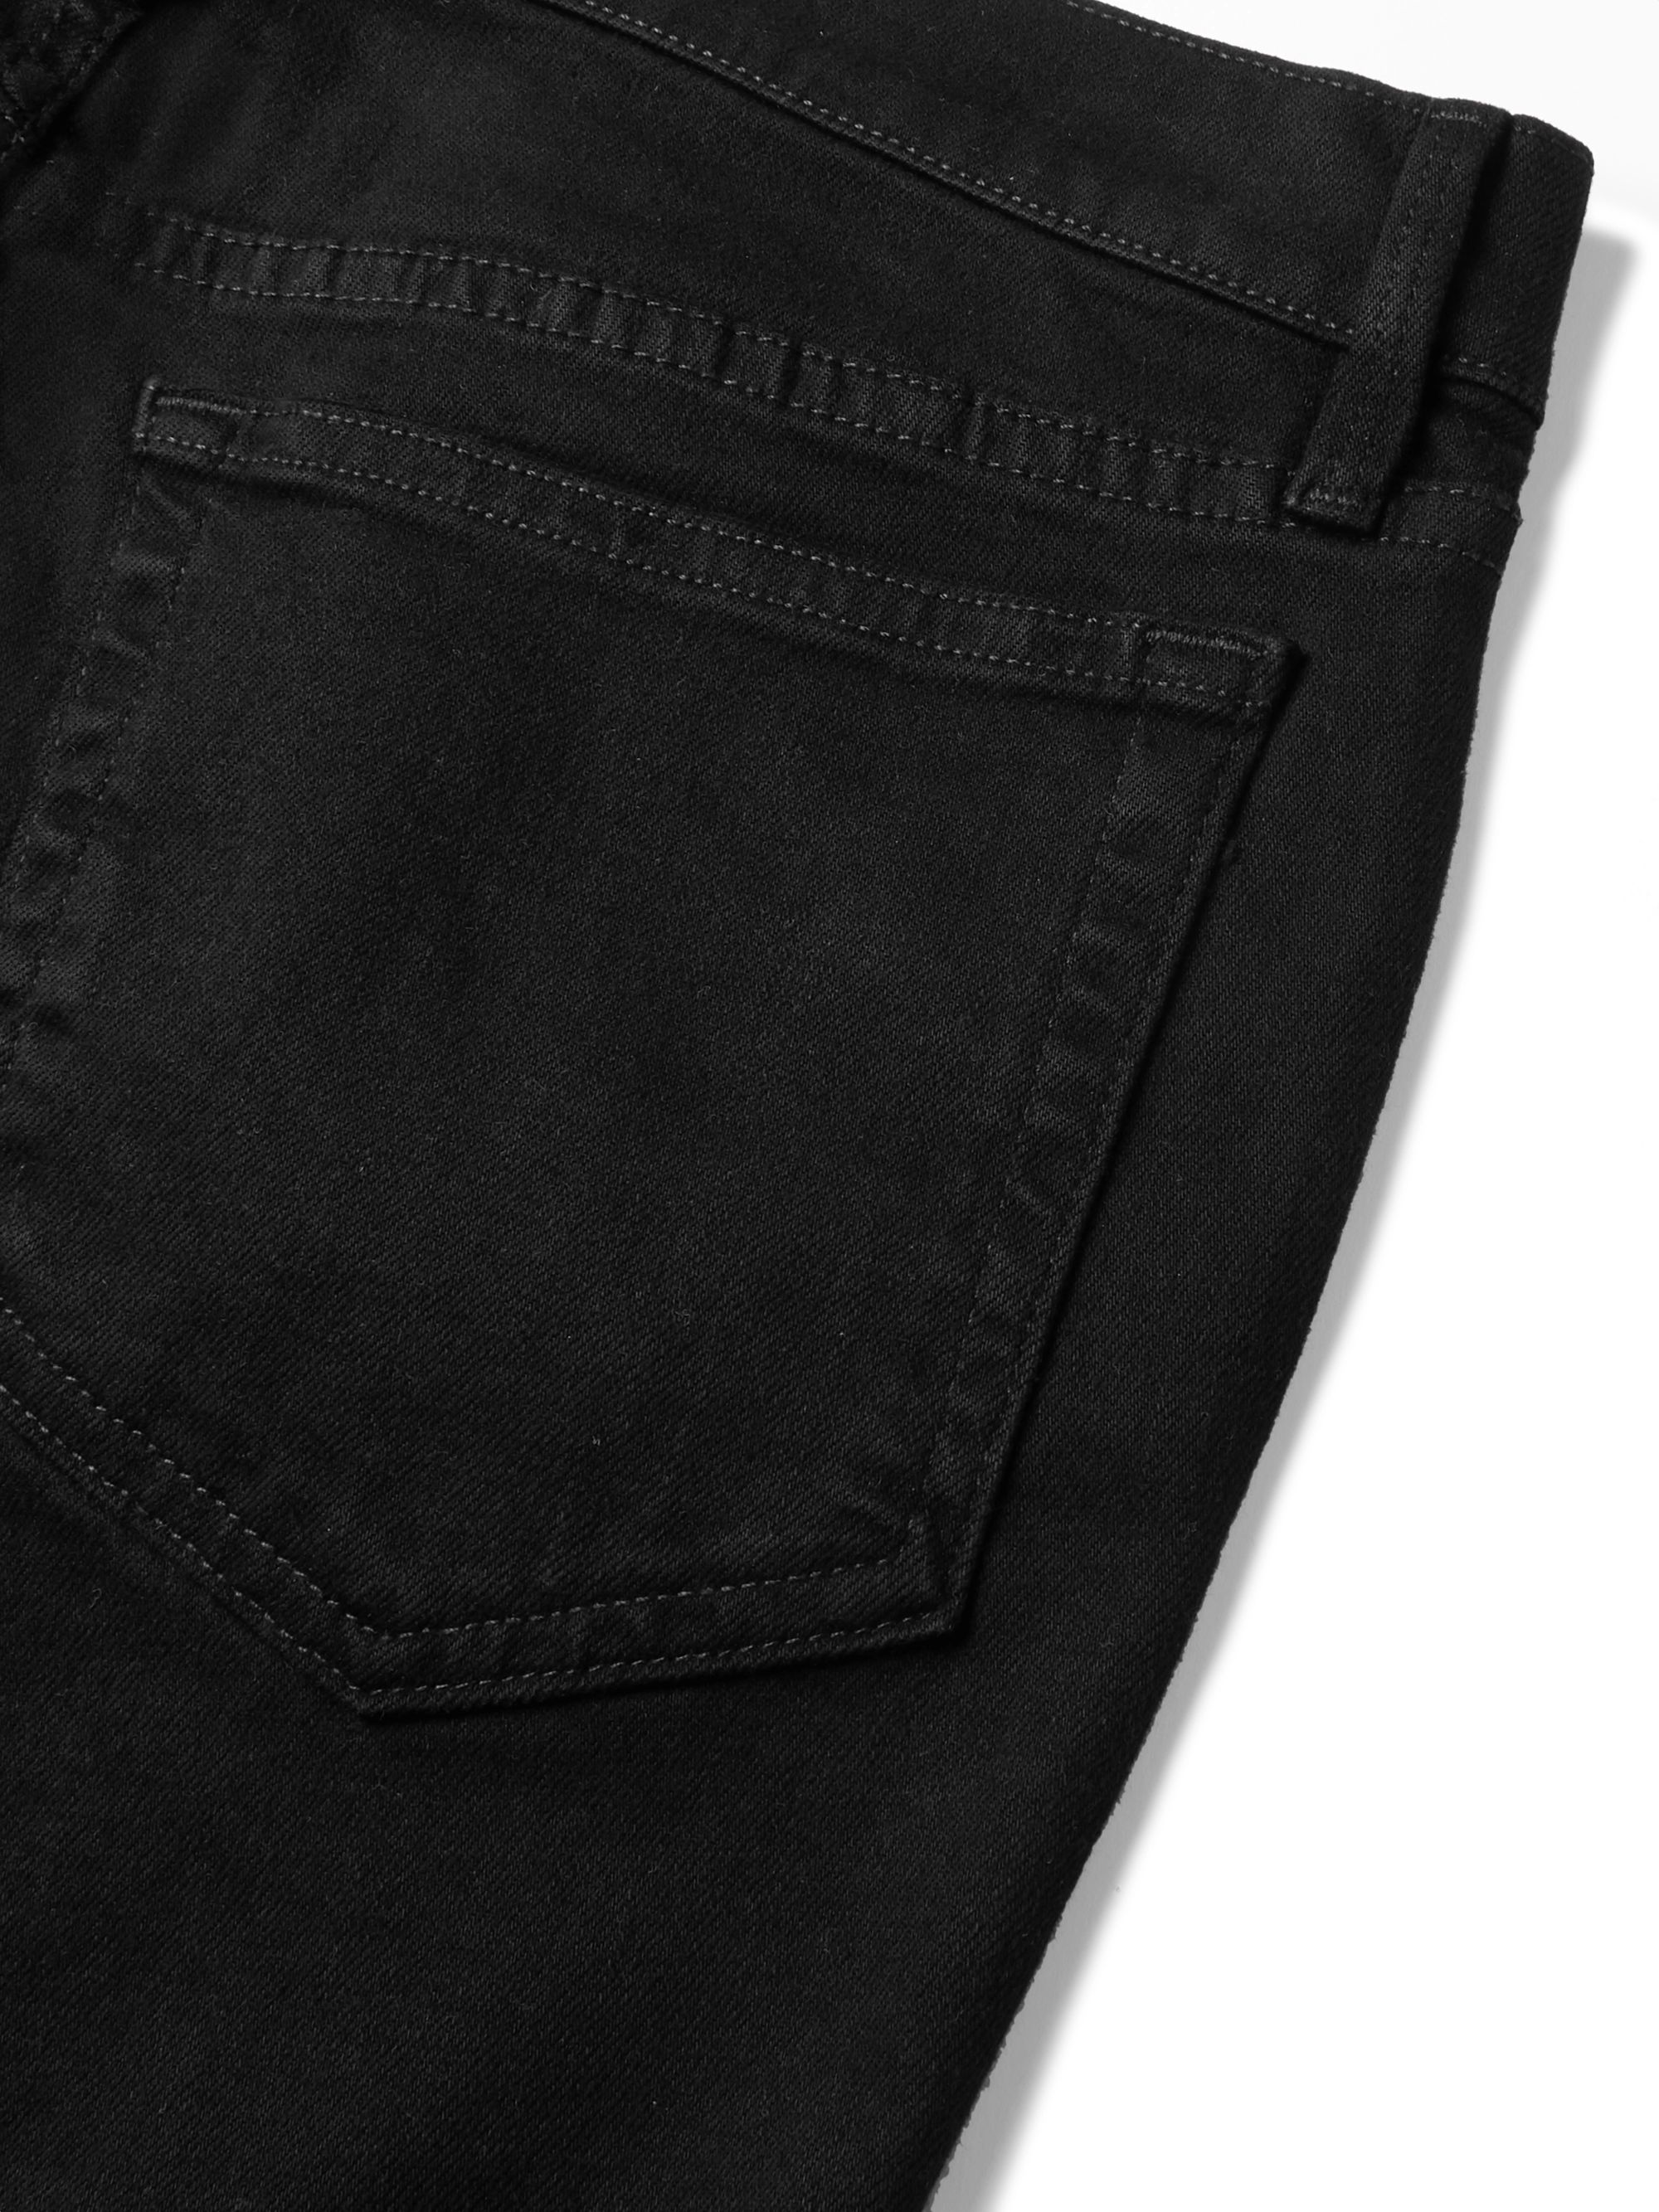 Black L'Homme Skinny-Fit Stretch-Denim Jeans | FRAME | MR PORTER